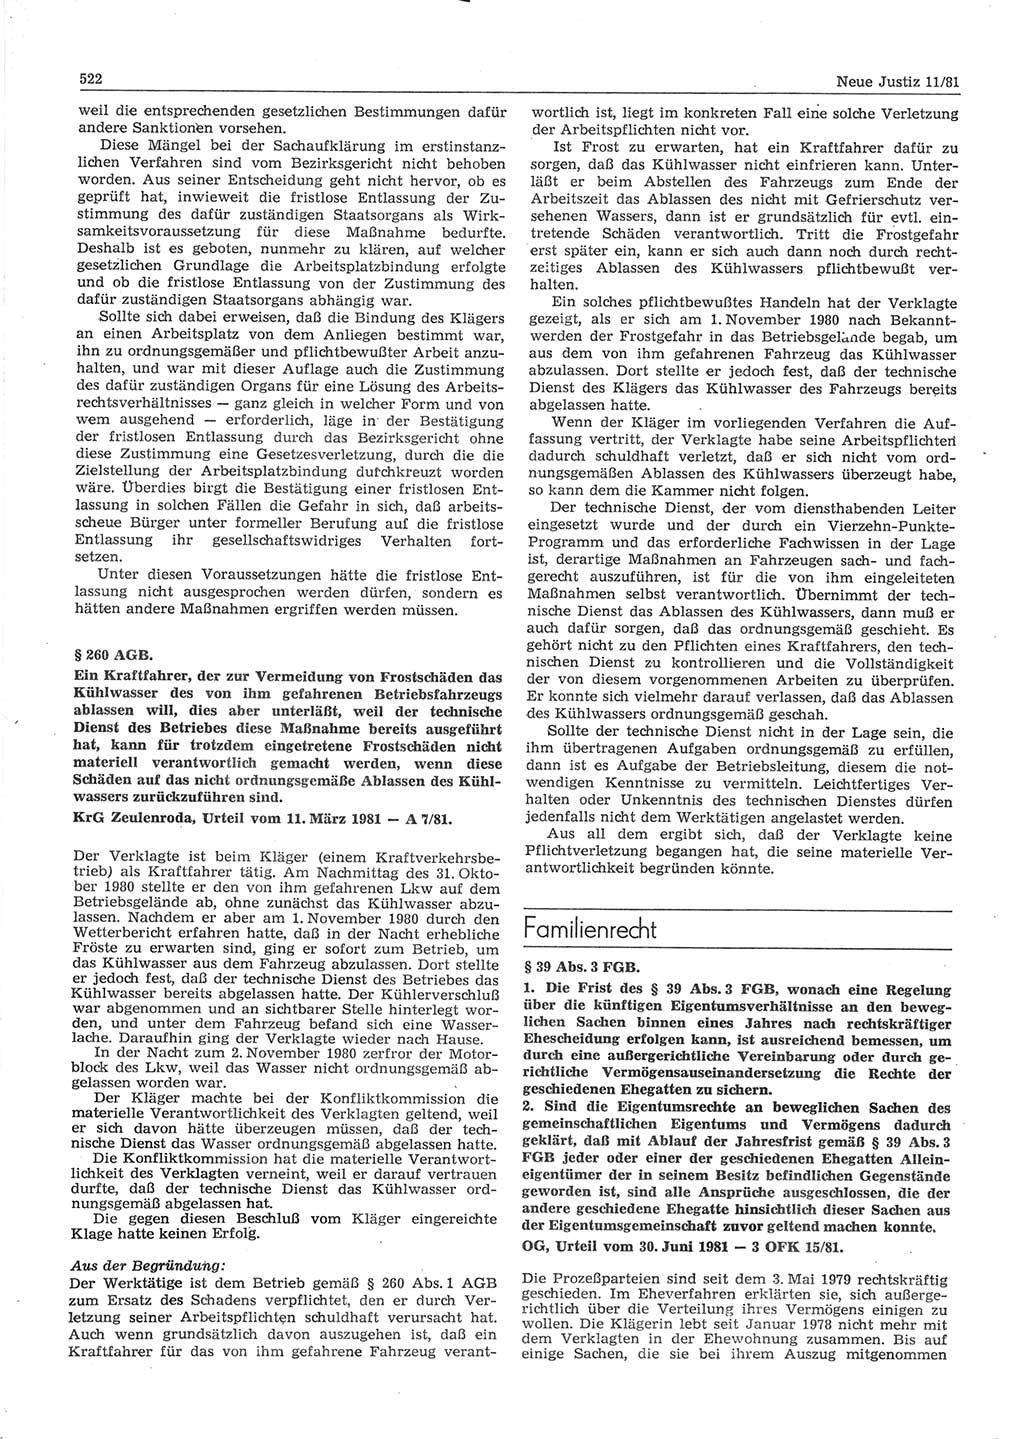 Neue Justiz (NJ), Zeitschrift für sozialistisches Recht und Gesetzlichkeit [Deutsche Demokratische Republik (DDR)], 35. Jahrgang 1981, Seite 522 (NJ DDR 1981, S. 522)